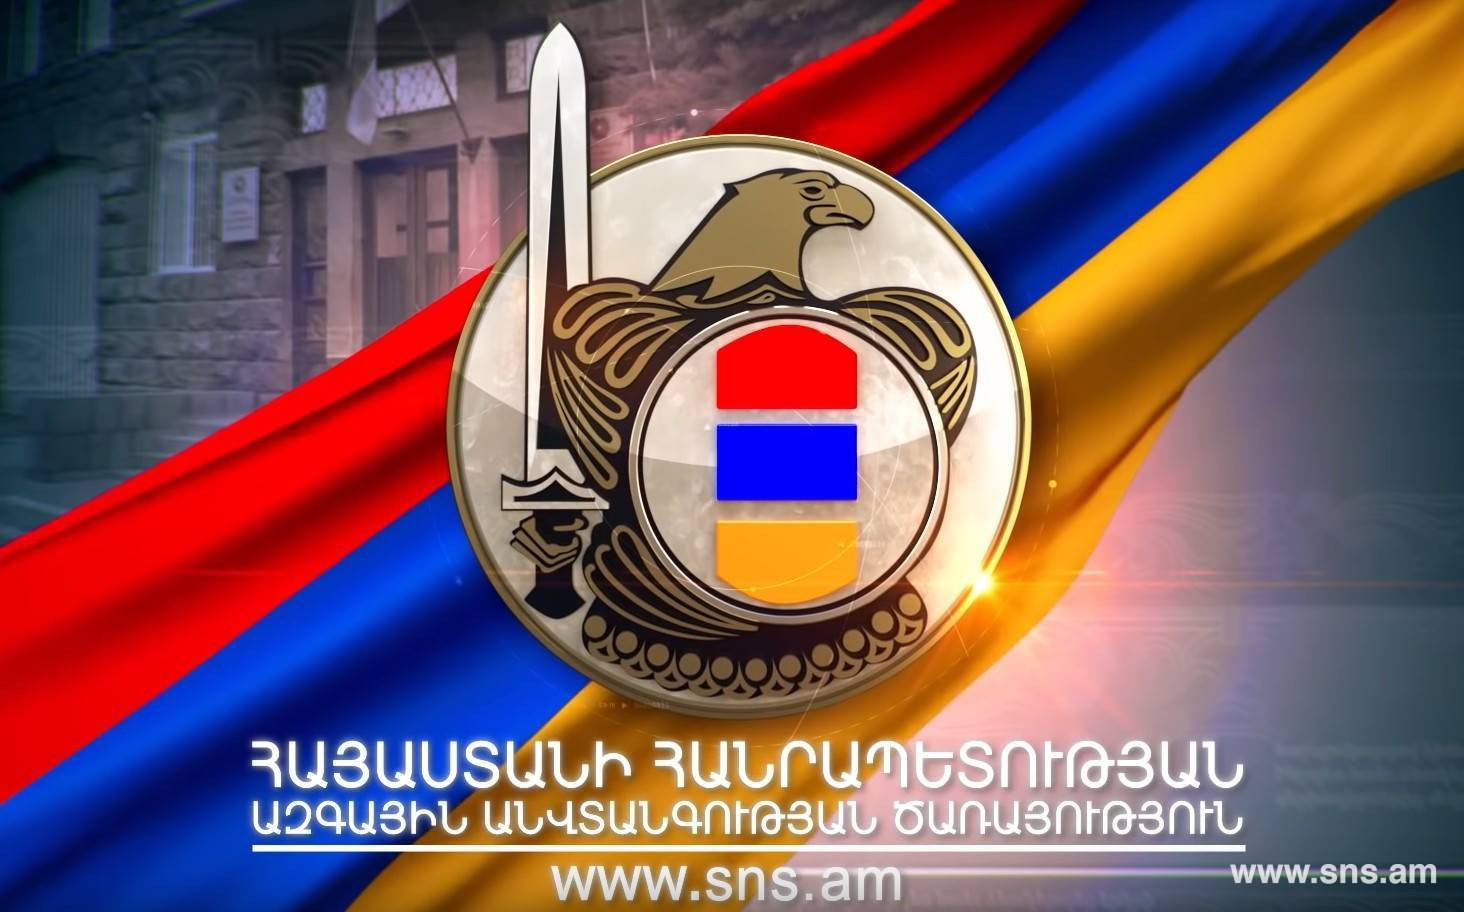 Ermenistan Ulusal Güvenlik Servisi Pela dağı bölgesinin Azerbaycan'ın kontrolü altında olduğu yönündeki söylentileri yalanladı